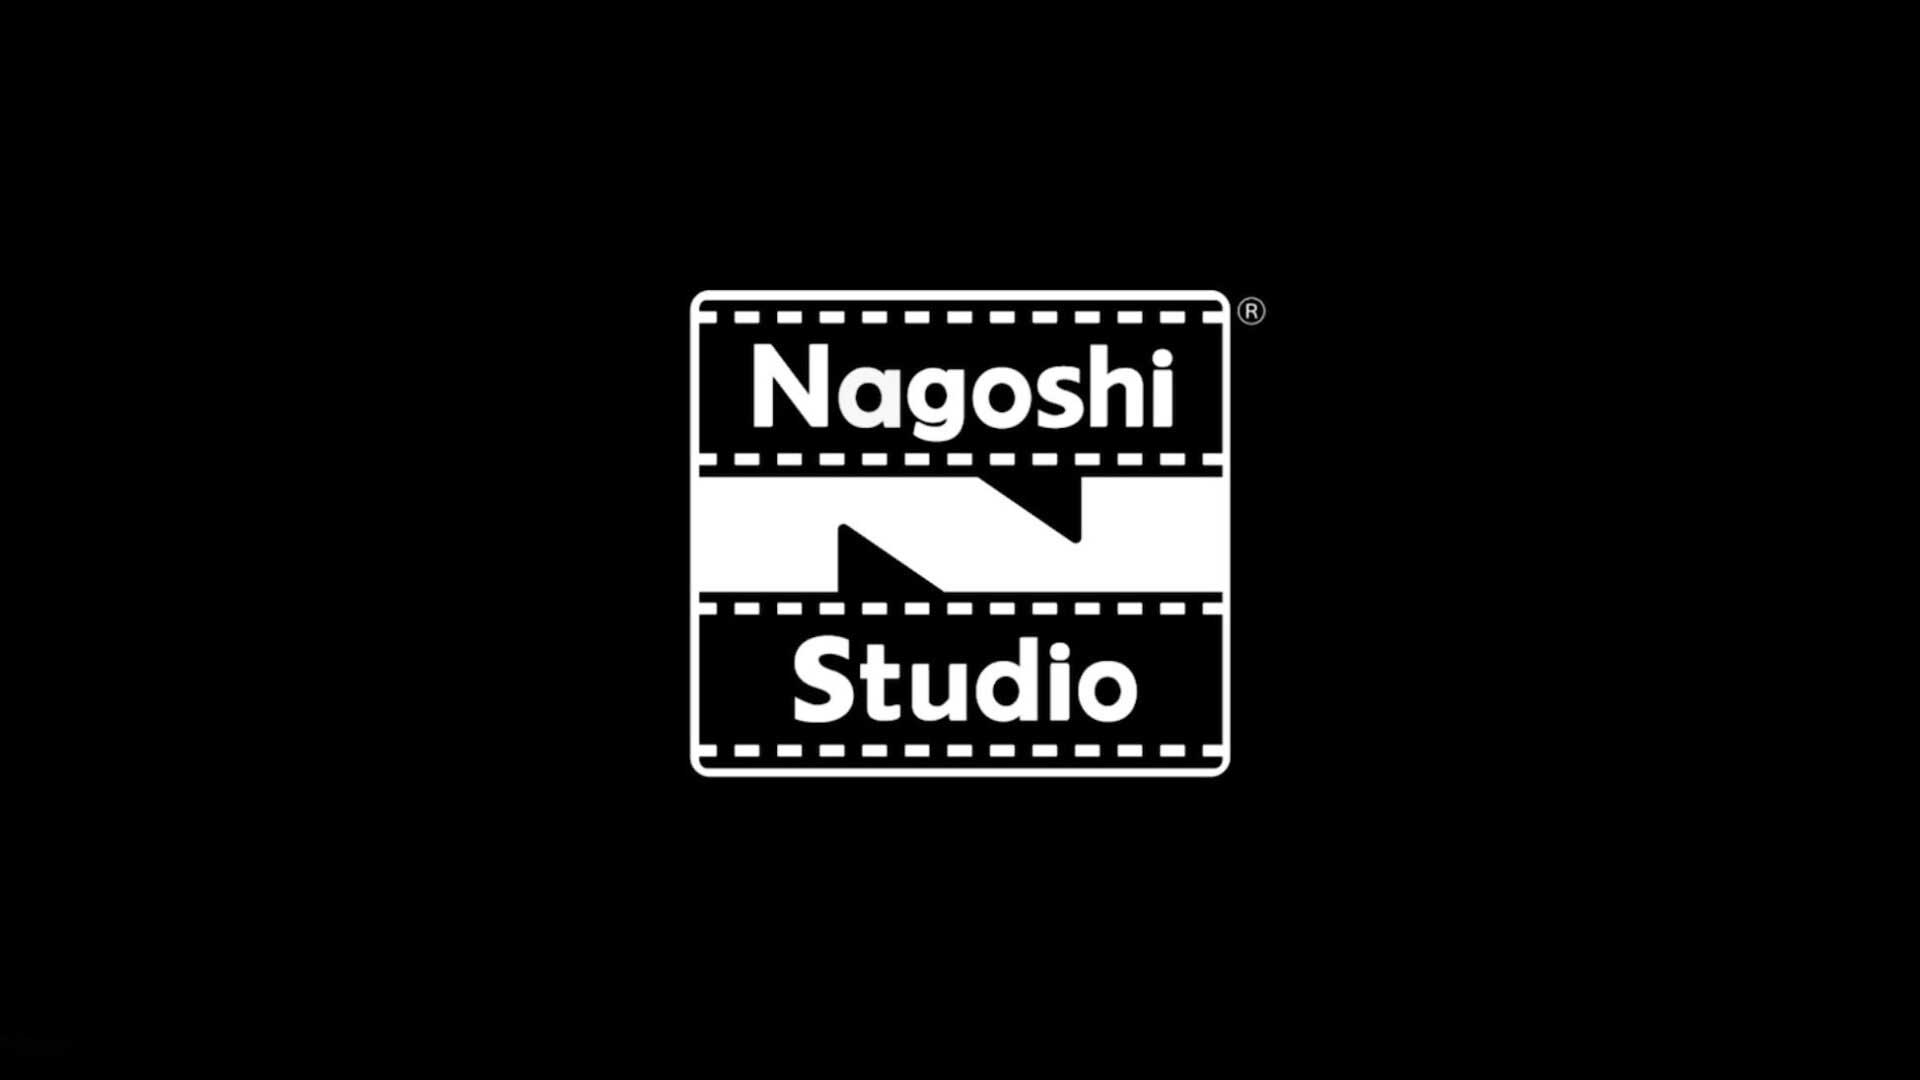 nagoshi studio logo yakuza creator toshihiro nagoshi  Image of nagoshi studio logo yakuza creator toshihiro nagoshi